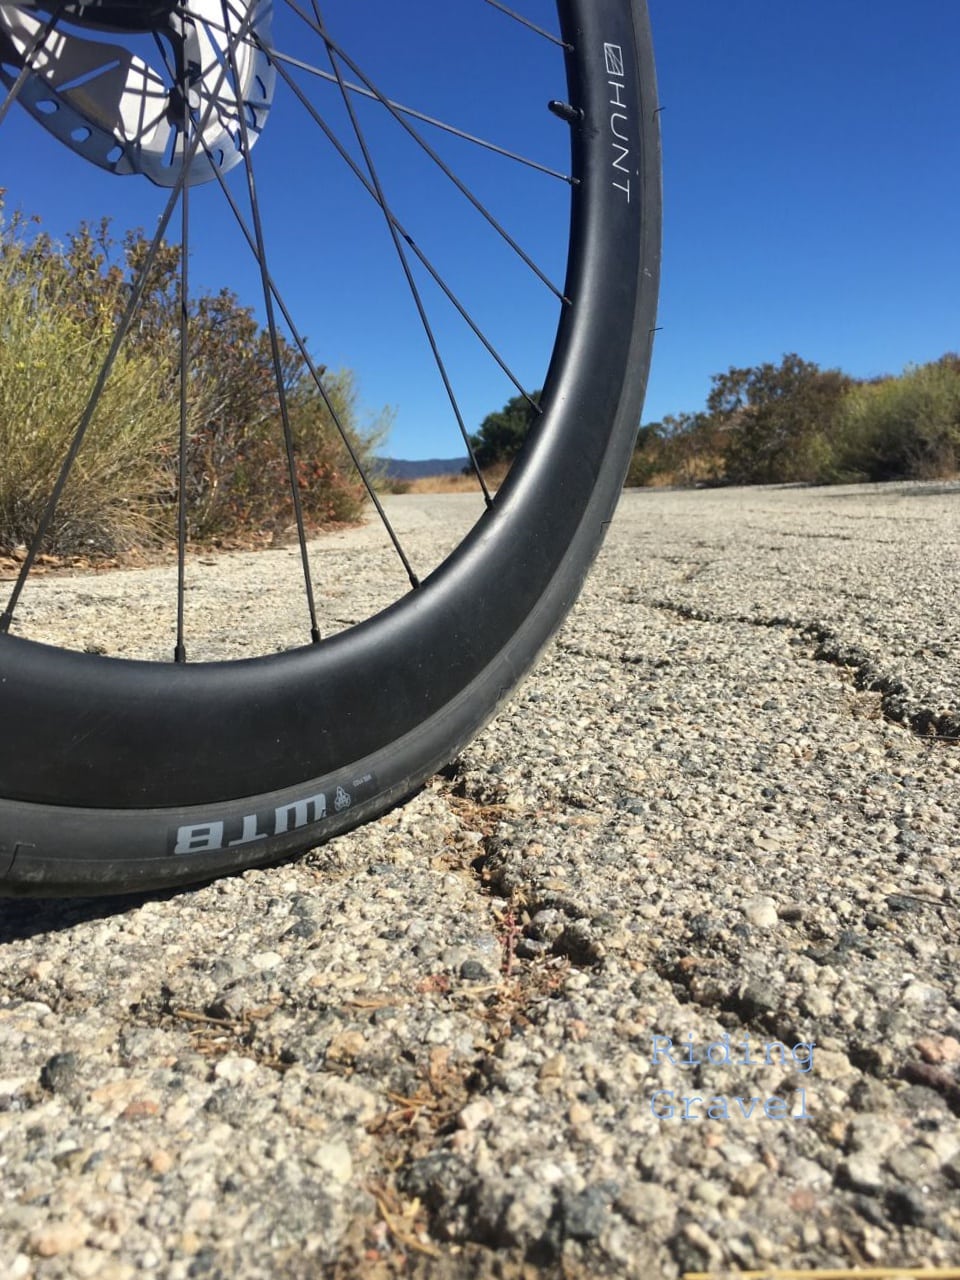 25 mm gravel tires